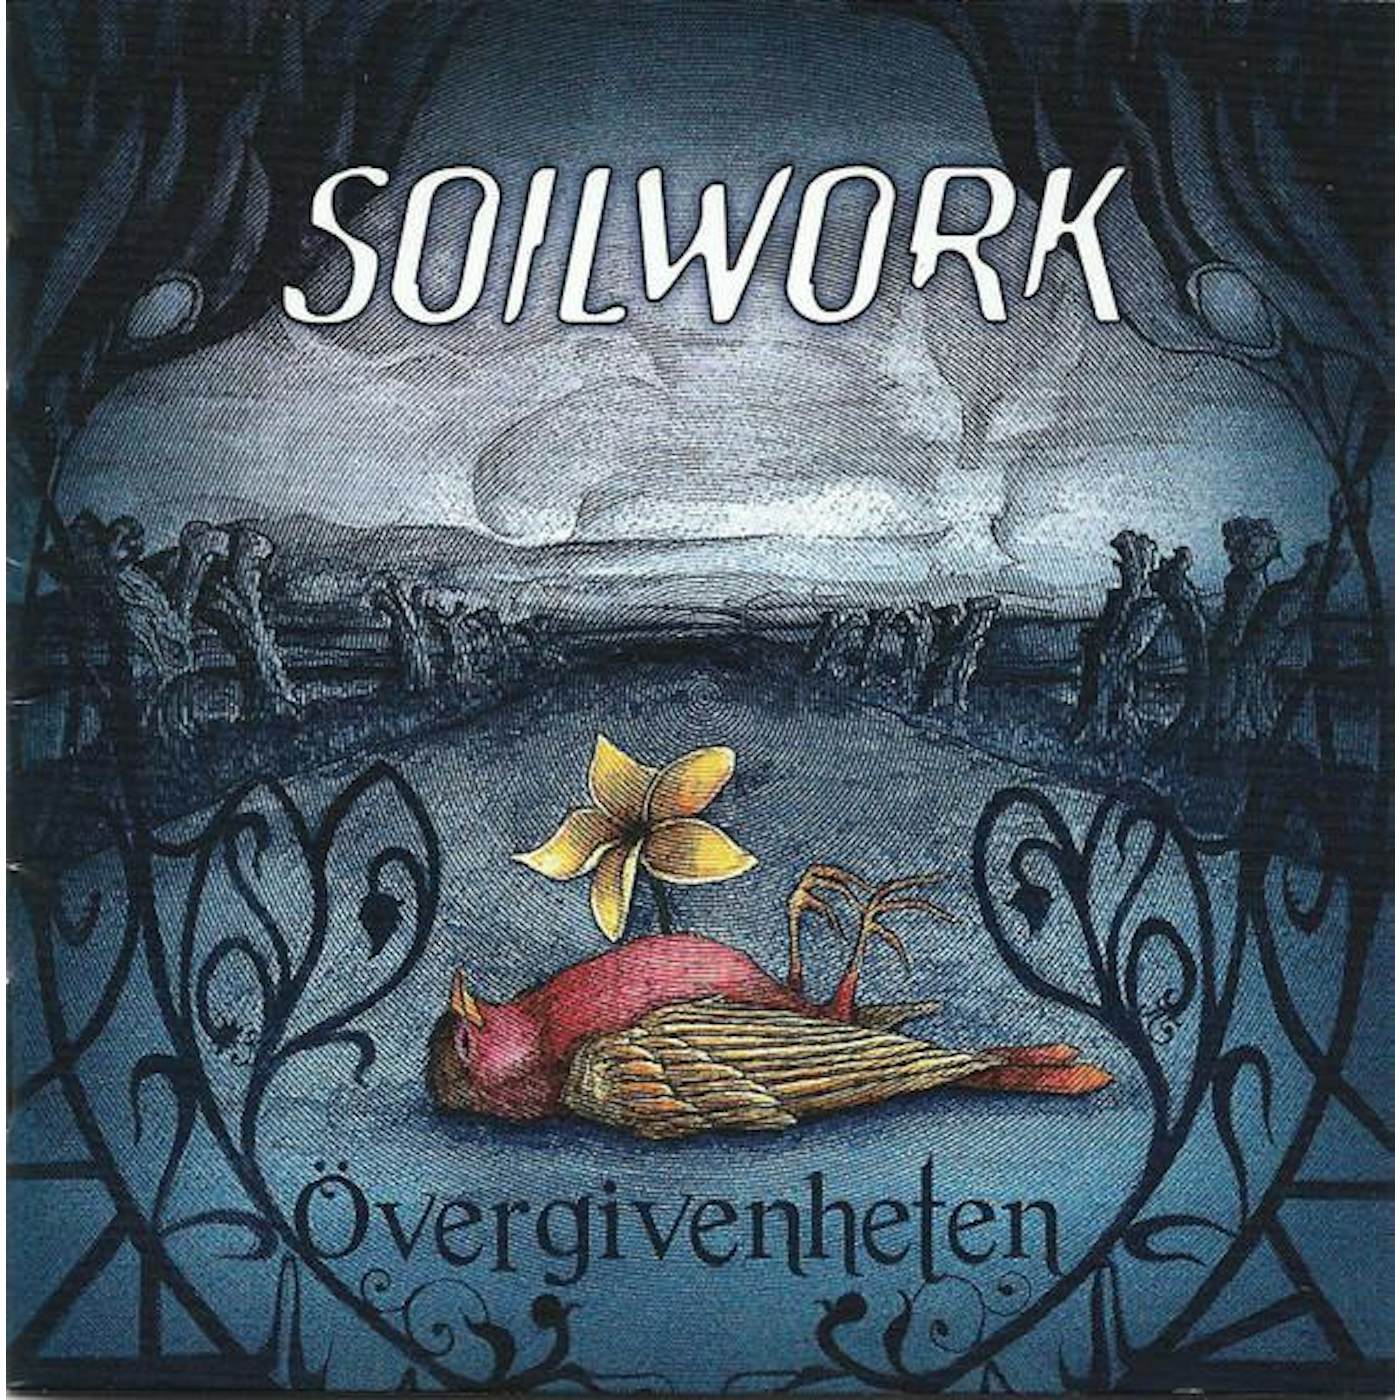 Soilwork OVERGIVENHETEN CD